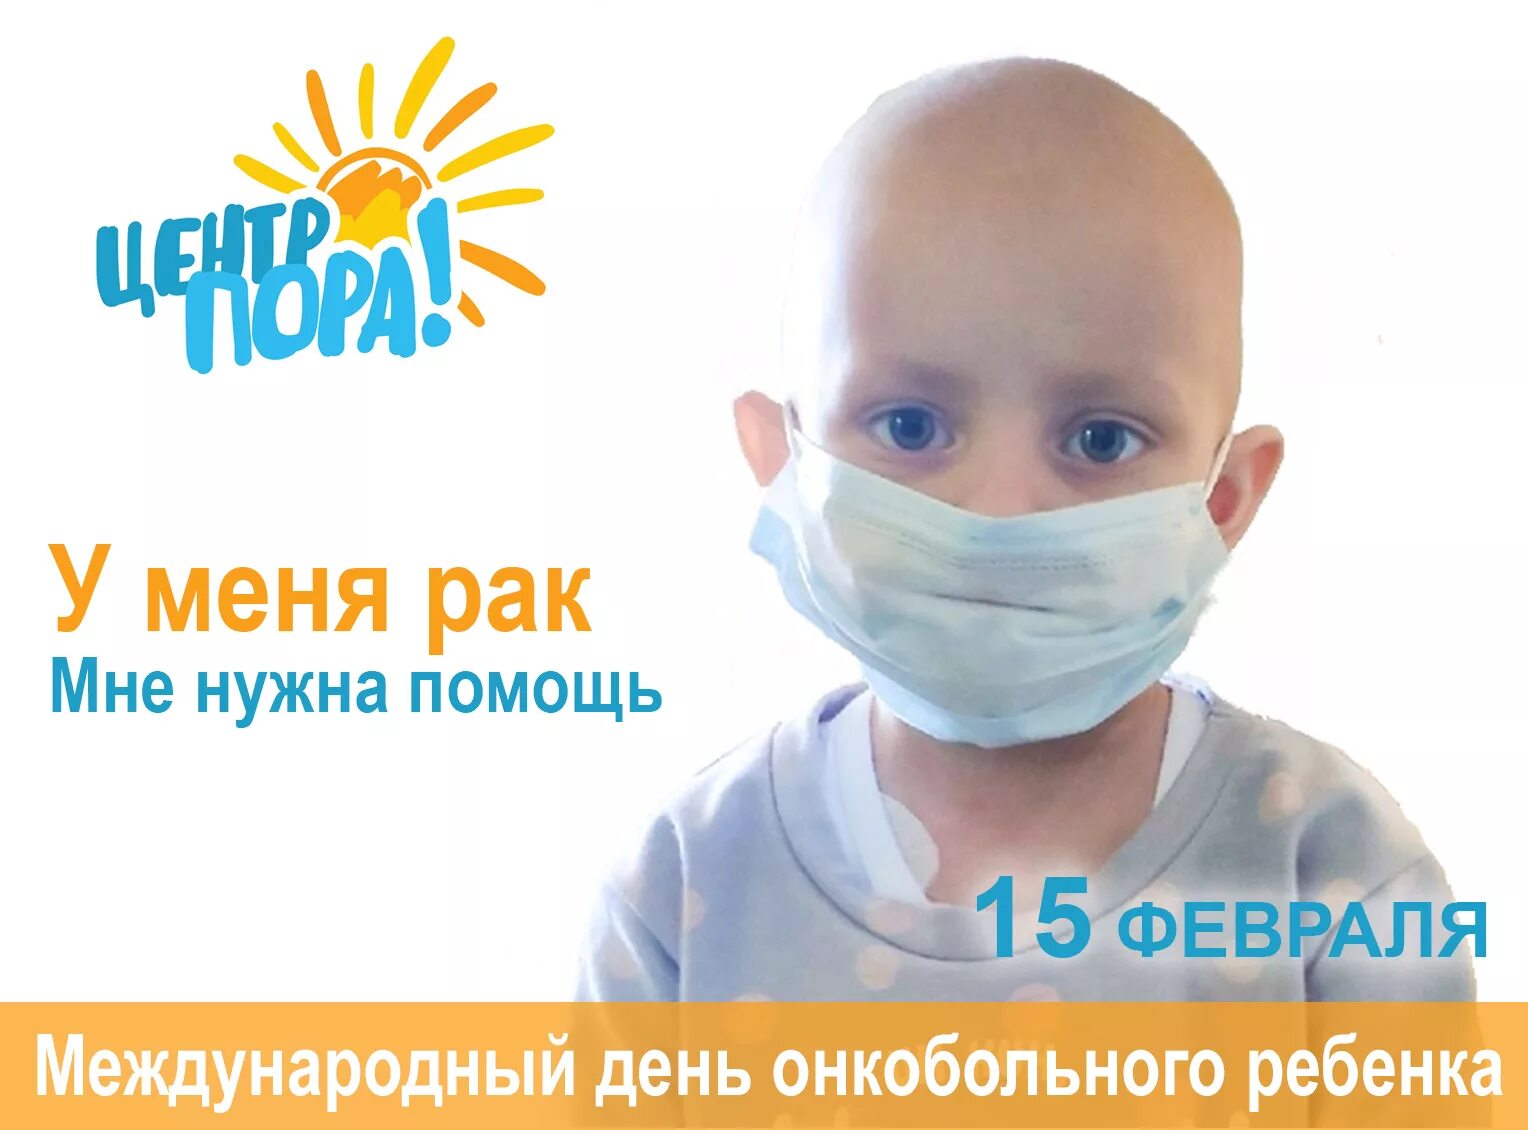 15 Февраля Международный день детей больных. Международный день онкобольного ребенка. Международный день онкобольного ребенка 15 февраля. Всемирный день онкобольных детей.